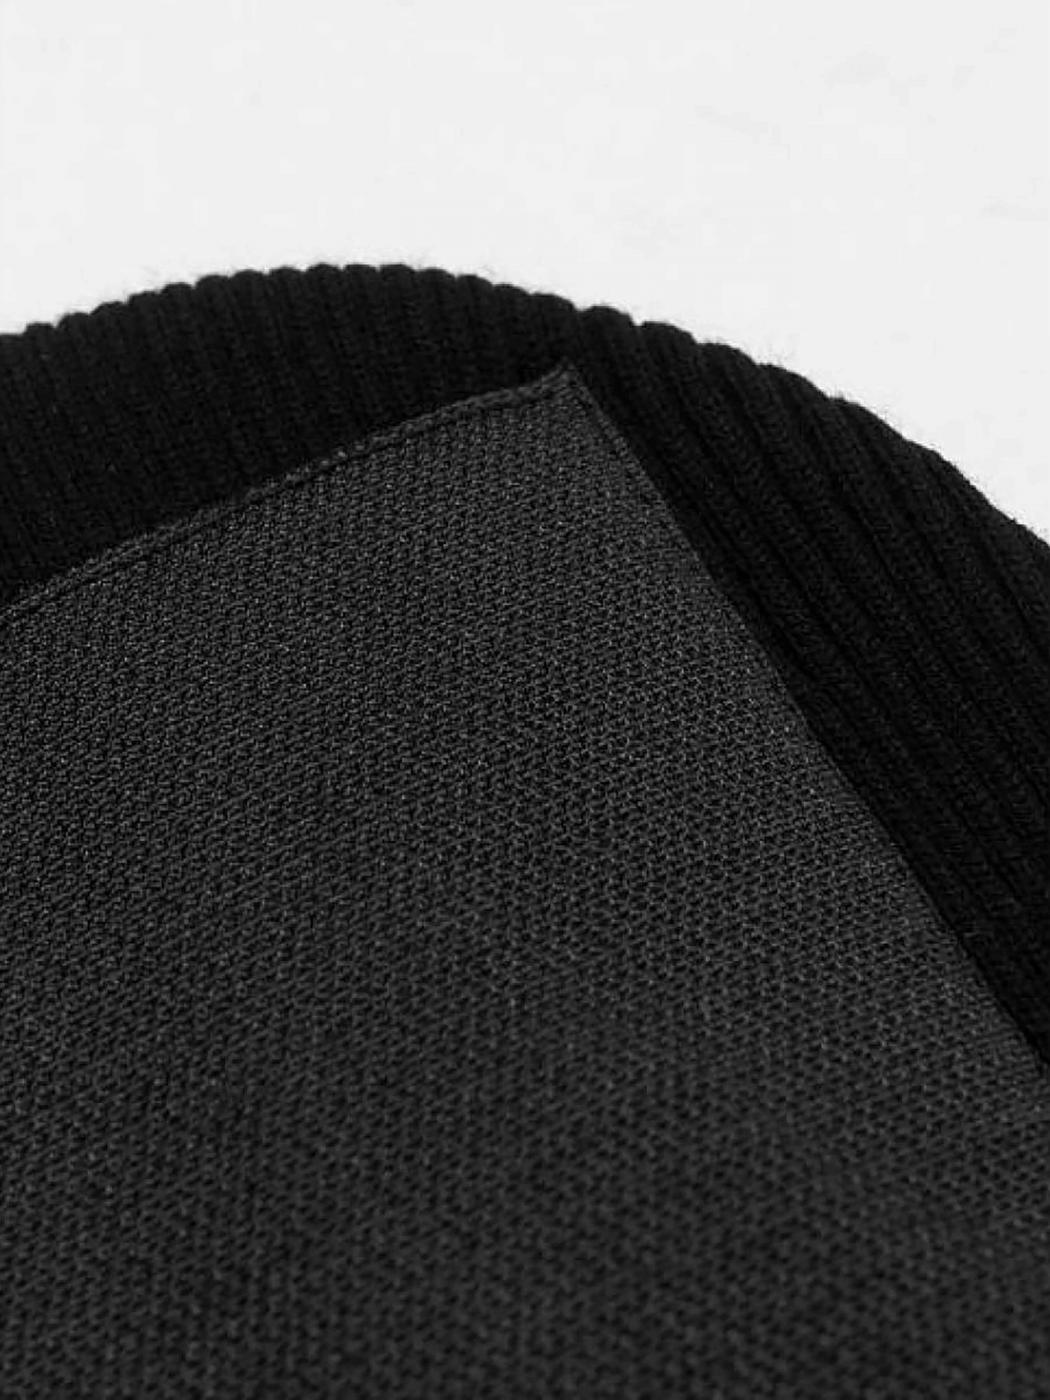 Шапка Headspin, All black Custom Wear - Фото 2